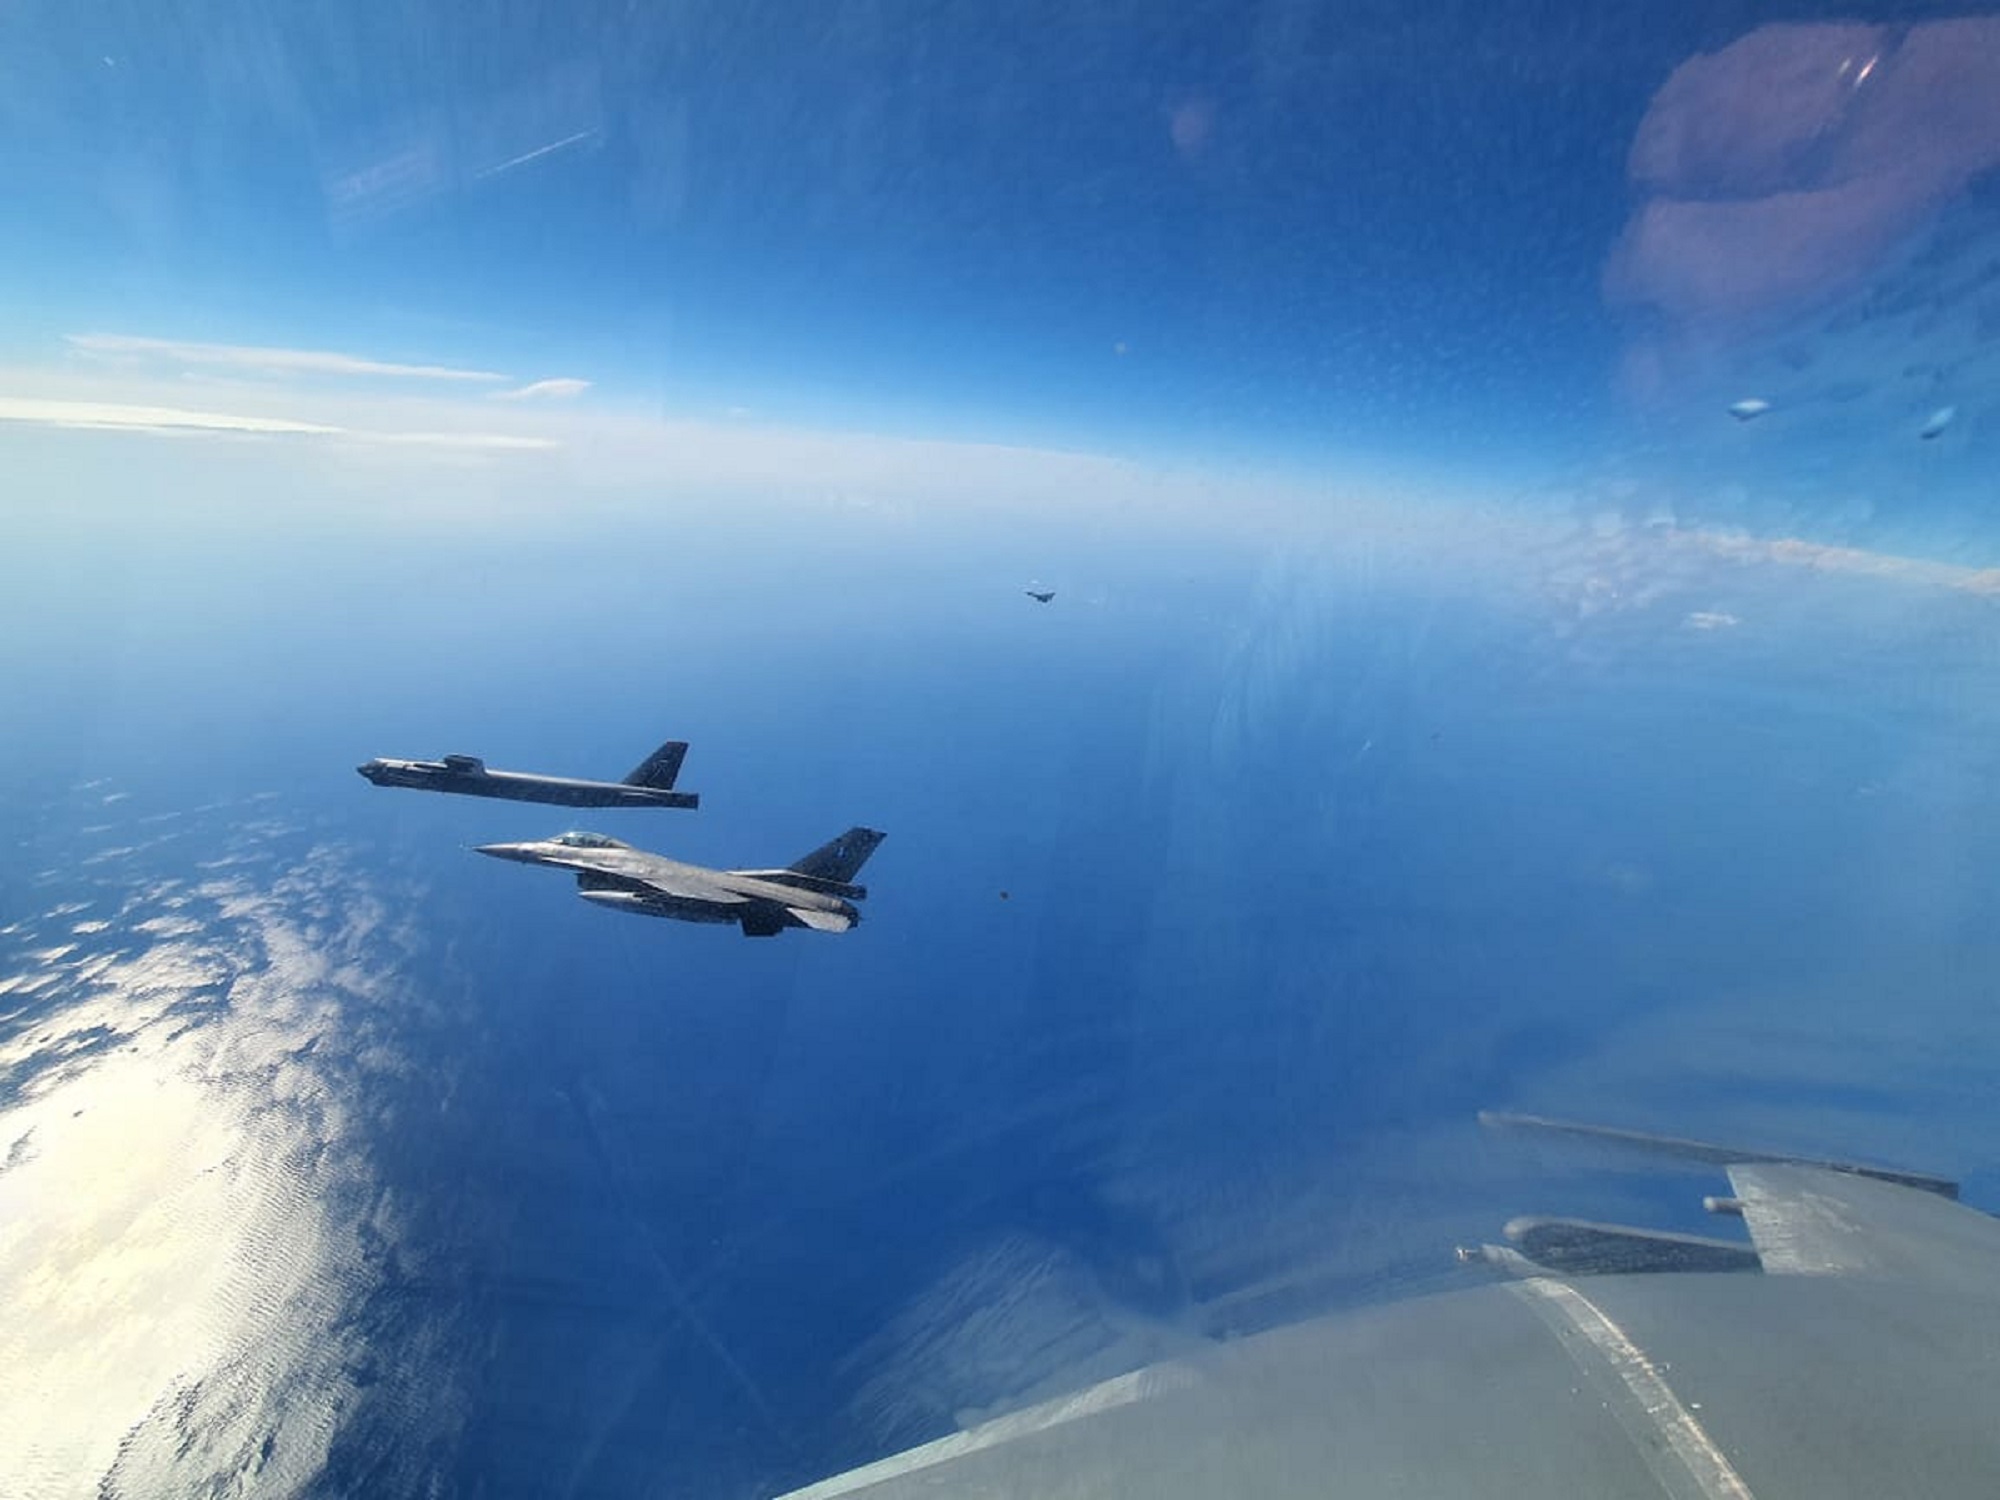 Συμμαχική συνεκπαίδευση των Ενόπλων Δυνάμεων με αμερικανικό βομβαρδιστικό Β-52 και ιταλικά μαχητικά Eurofighter Typhoon